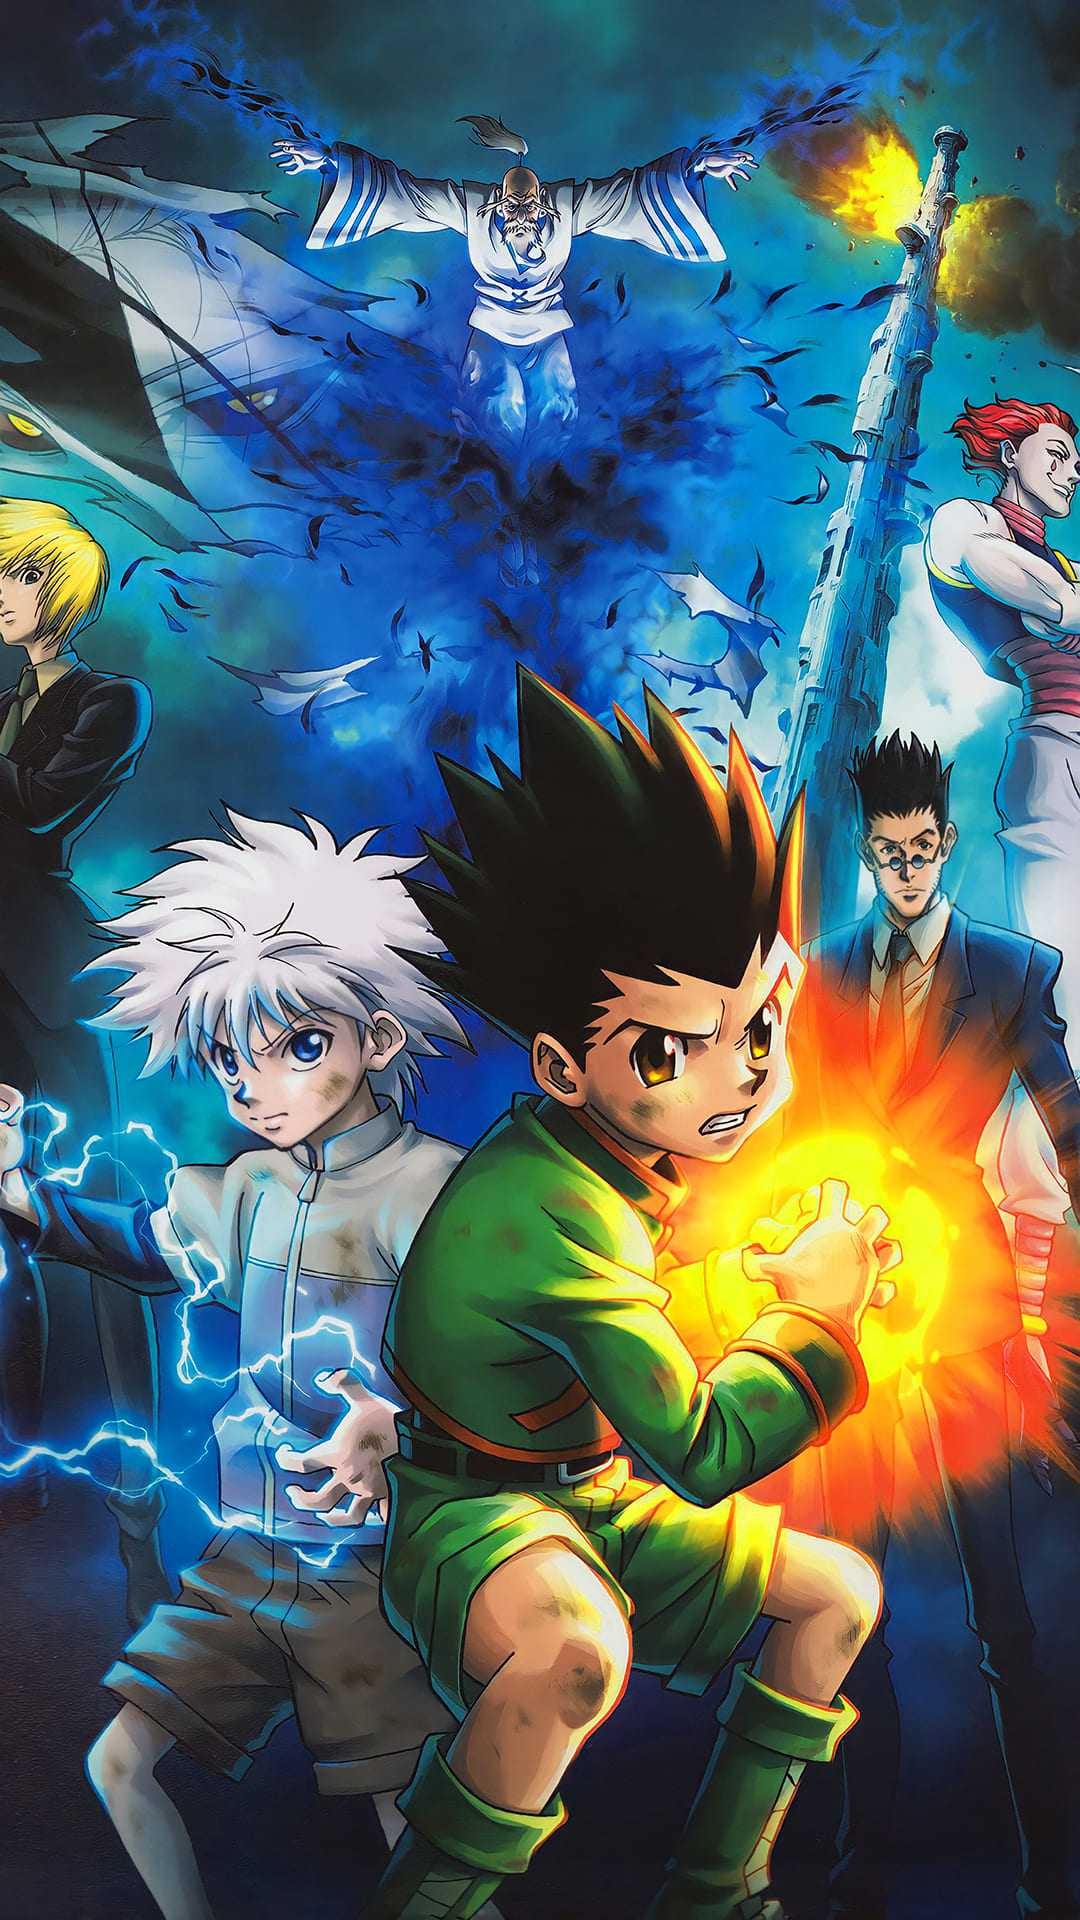 Gon Freecss: Manga, Weekly Shonen Jump, Yoshihiro Togashi, A story of a young boy. 1080x1920 Full HD Wallpaper.